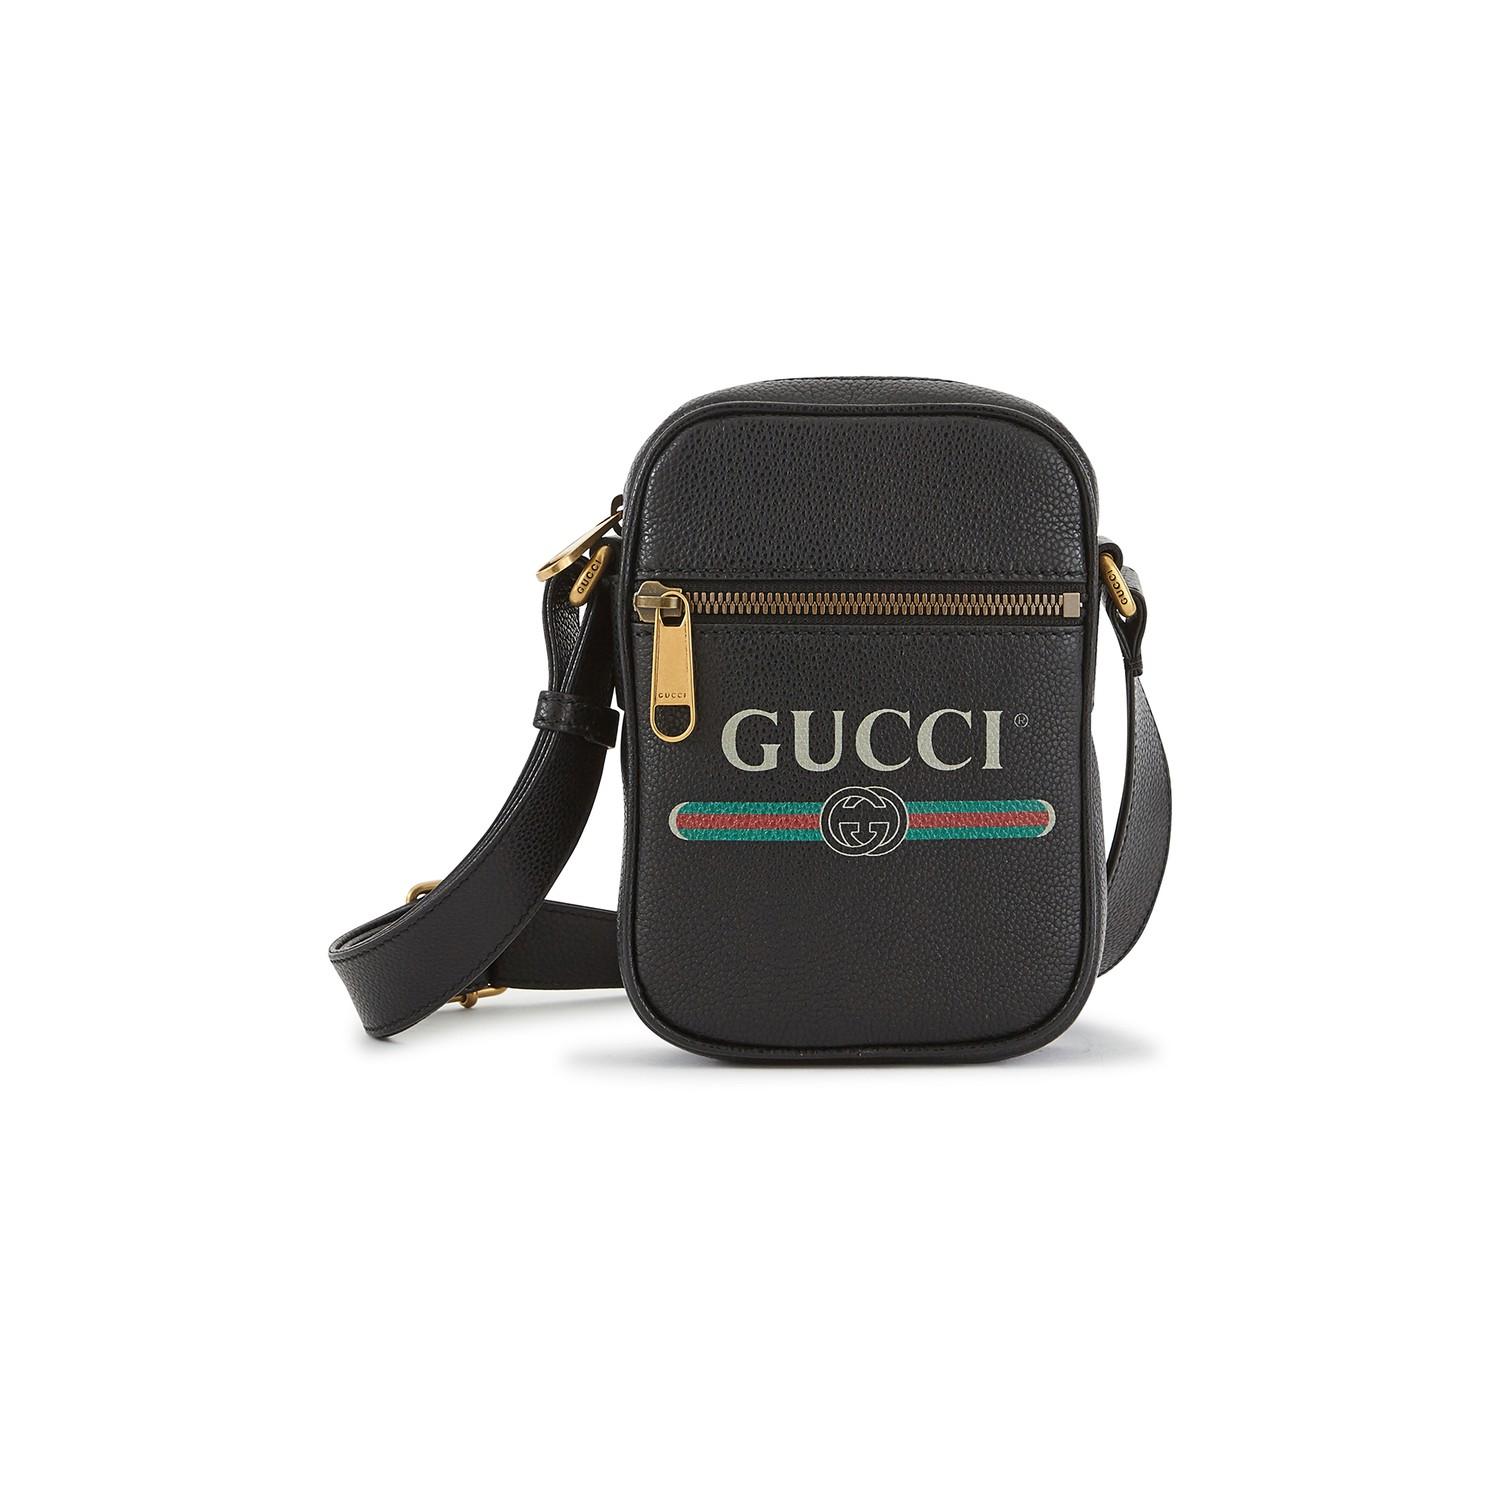 Gucci Print Shoulder Bag in Black for Men - Lyst